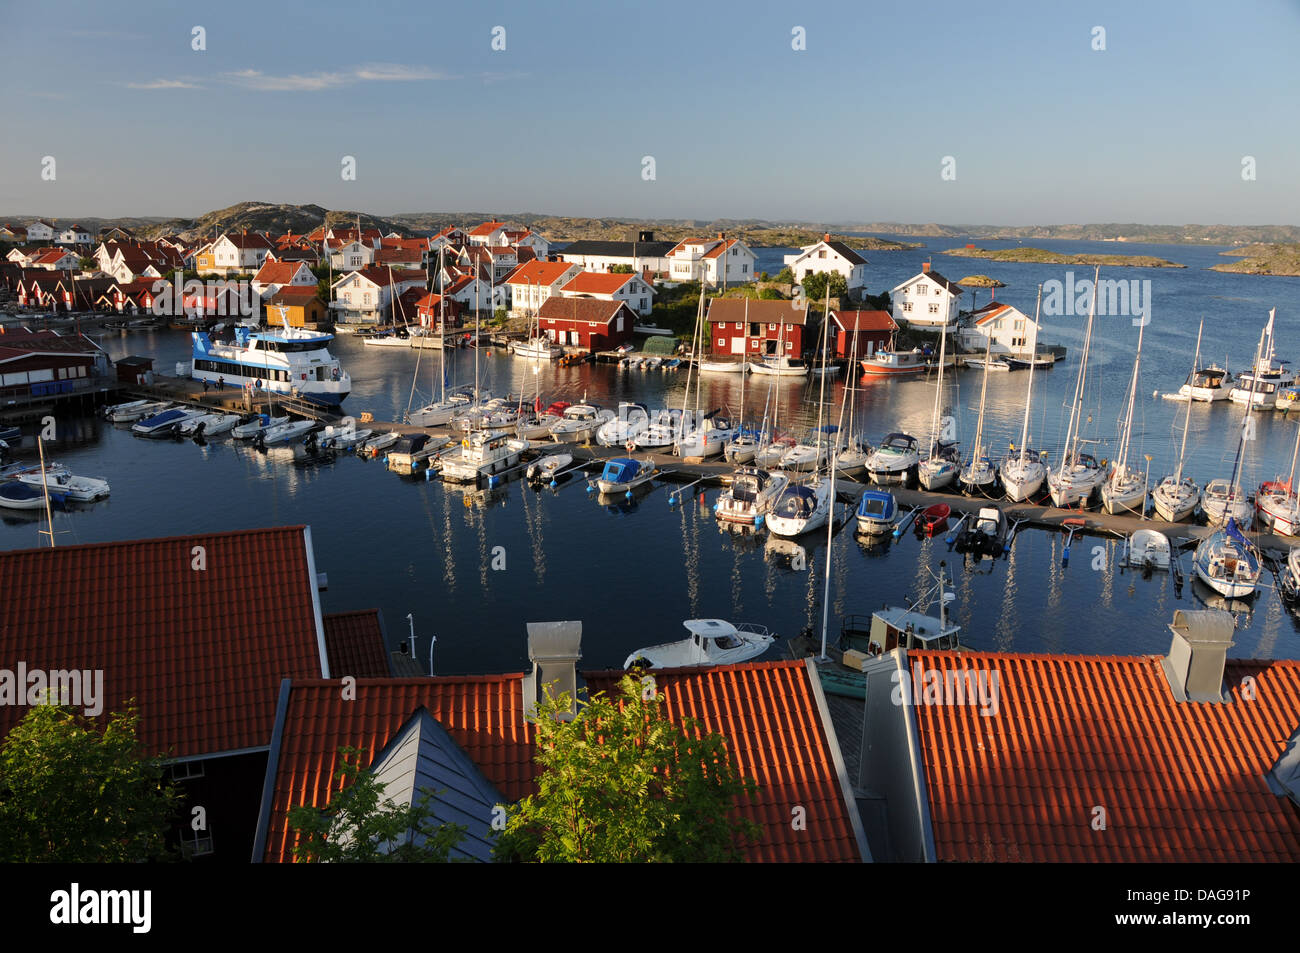 Petit port rempli de bateaux, yachts, et maisons colorées sur île de Gullholmen dans Bohuslän sur la côte ouest de la Suède Banque D'Images